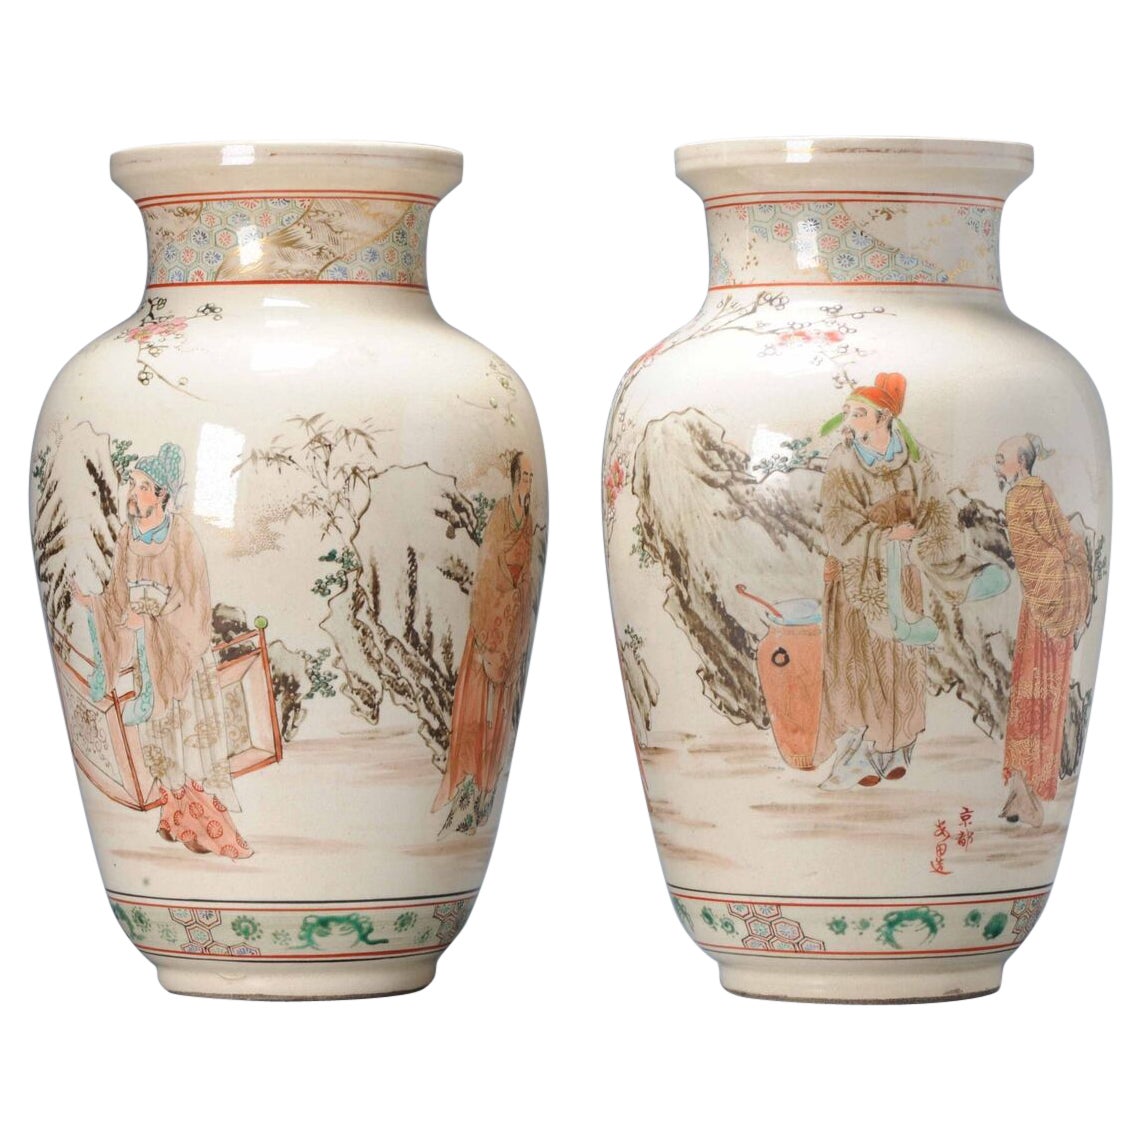 Paar antike japanische Satsuma-Vasen aus der Meiji-Zeit, Japan, figürlich markiert, 19. Jahrhundert